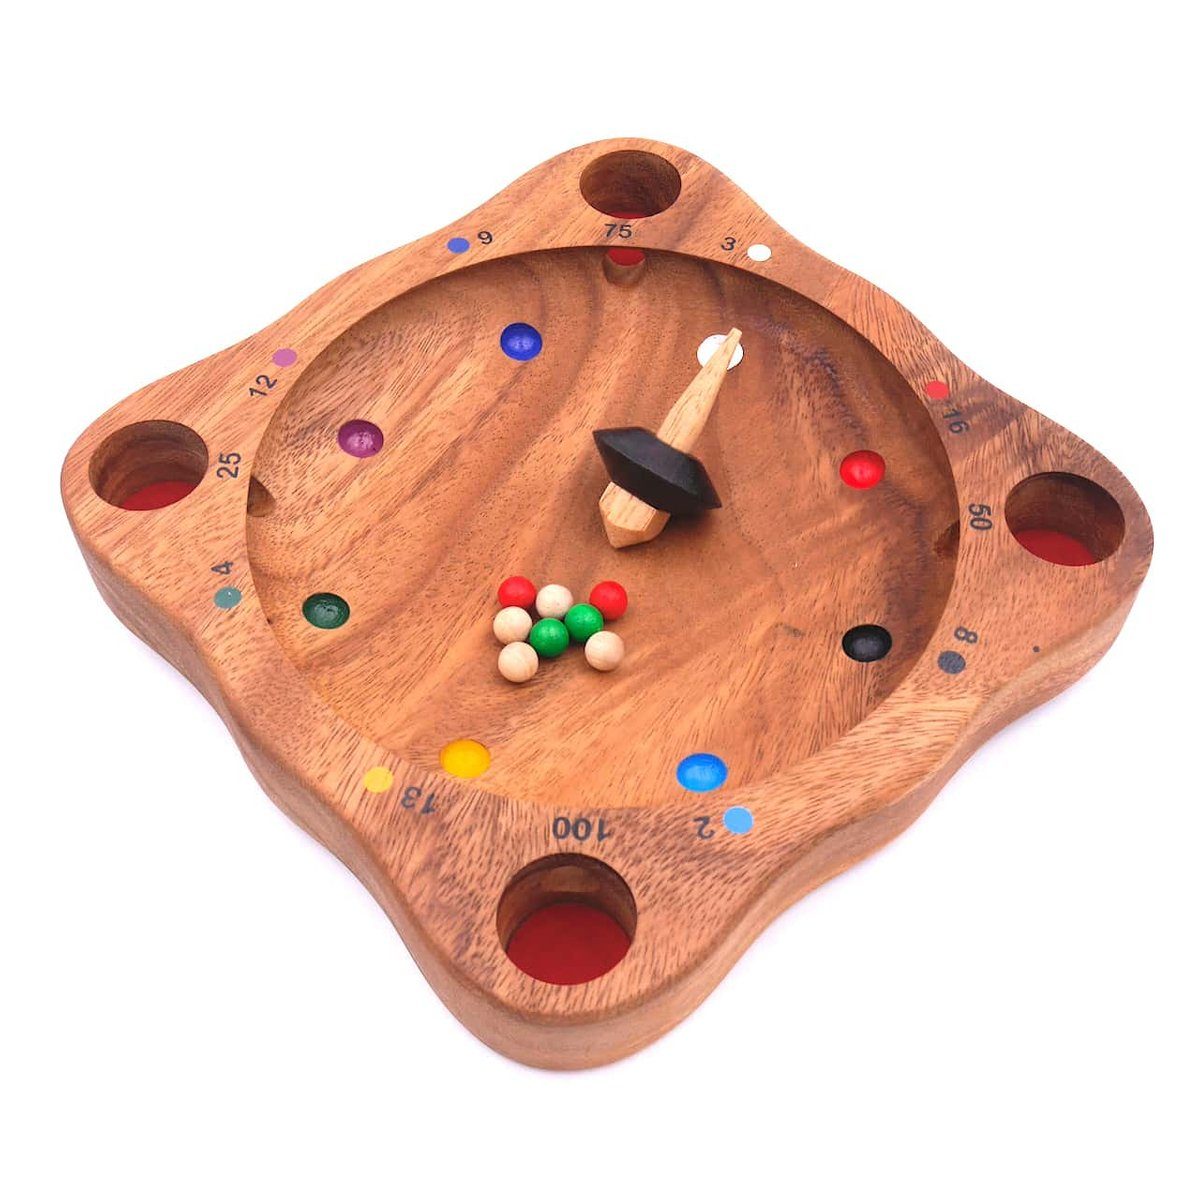 ROMBOL Denkspiele Spiel, Brettspiel Tiroler Roulette - traditionelles Holzspiel mit Spannungsgarantie, Holzspiel